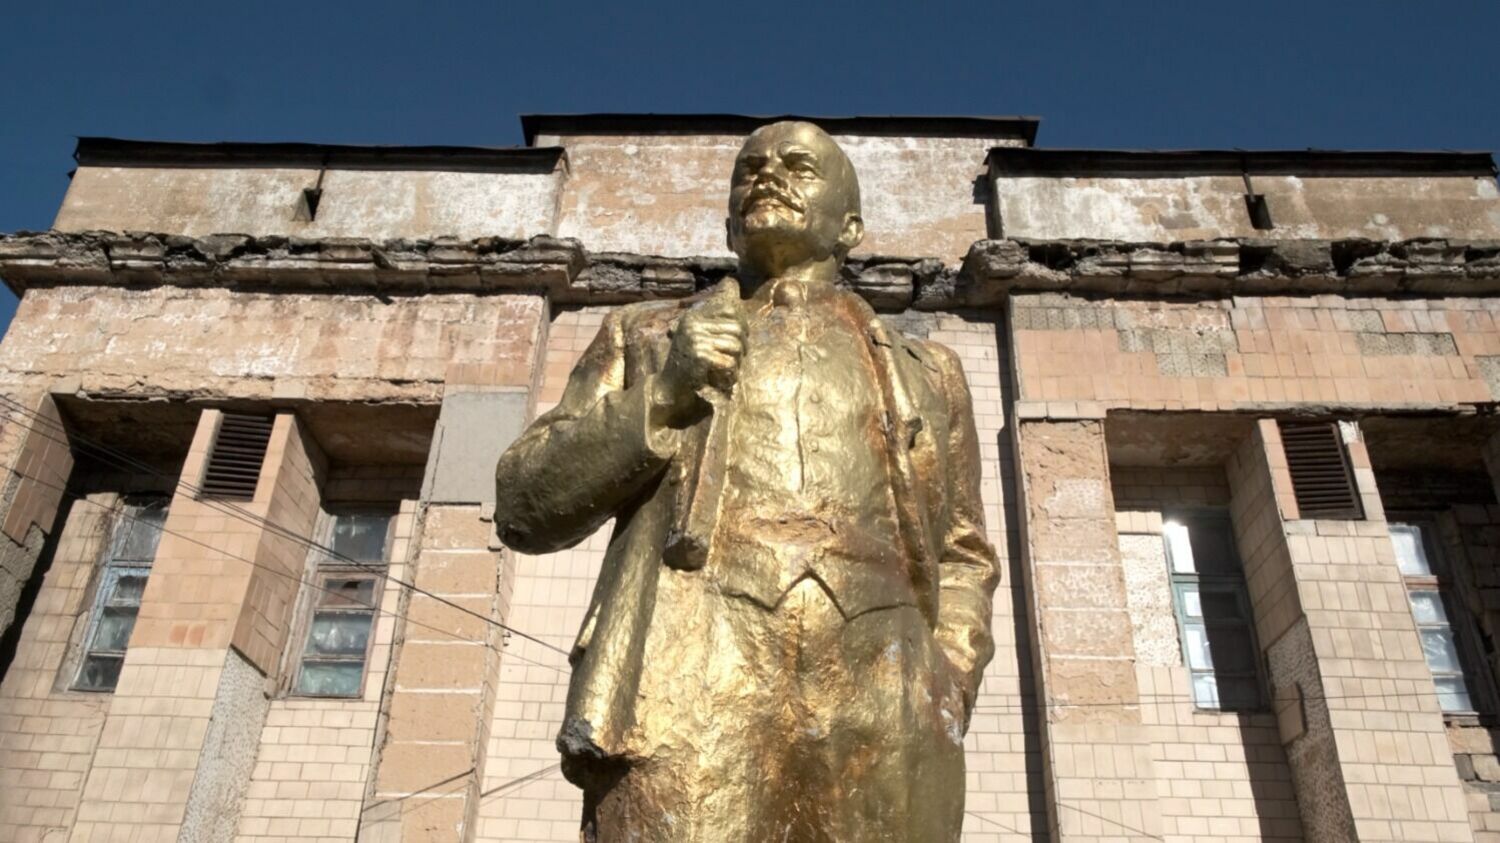 На фабрике бережно относятся к истории. До сих пор трудящихся каждое утро перед работой встречает памятник вождя мирового пролетариата Владимира Ленина. Сотрудники «Снежинки» ежегодно реставрируют монумент.